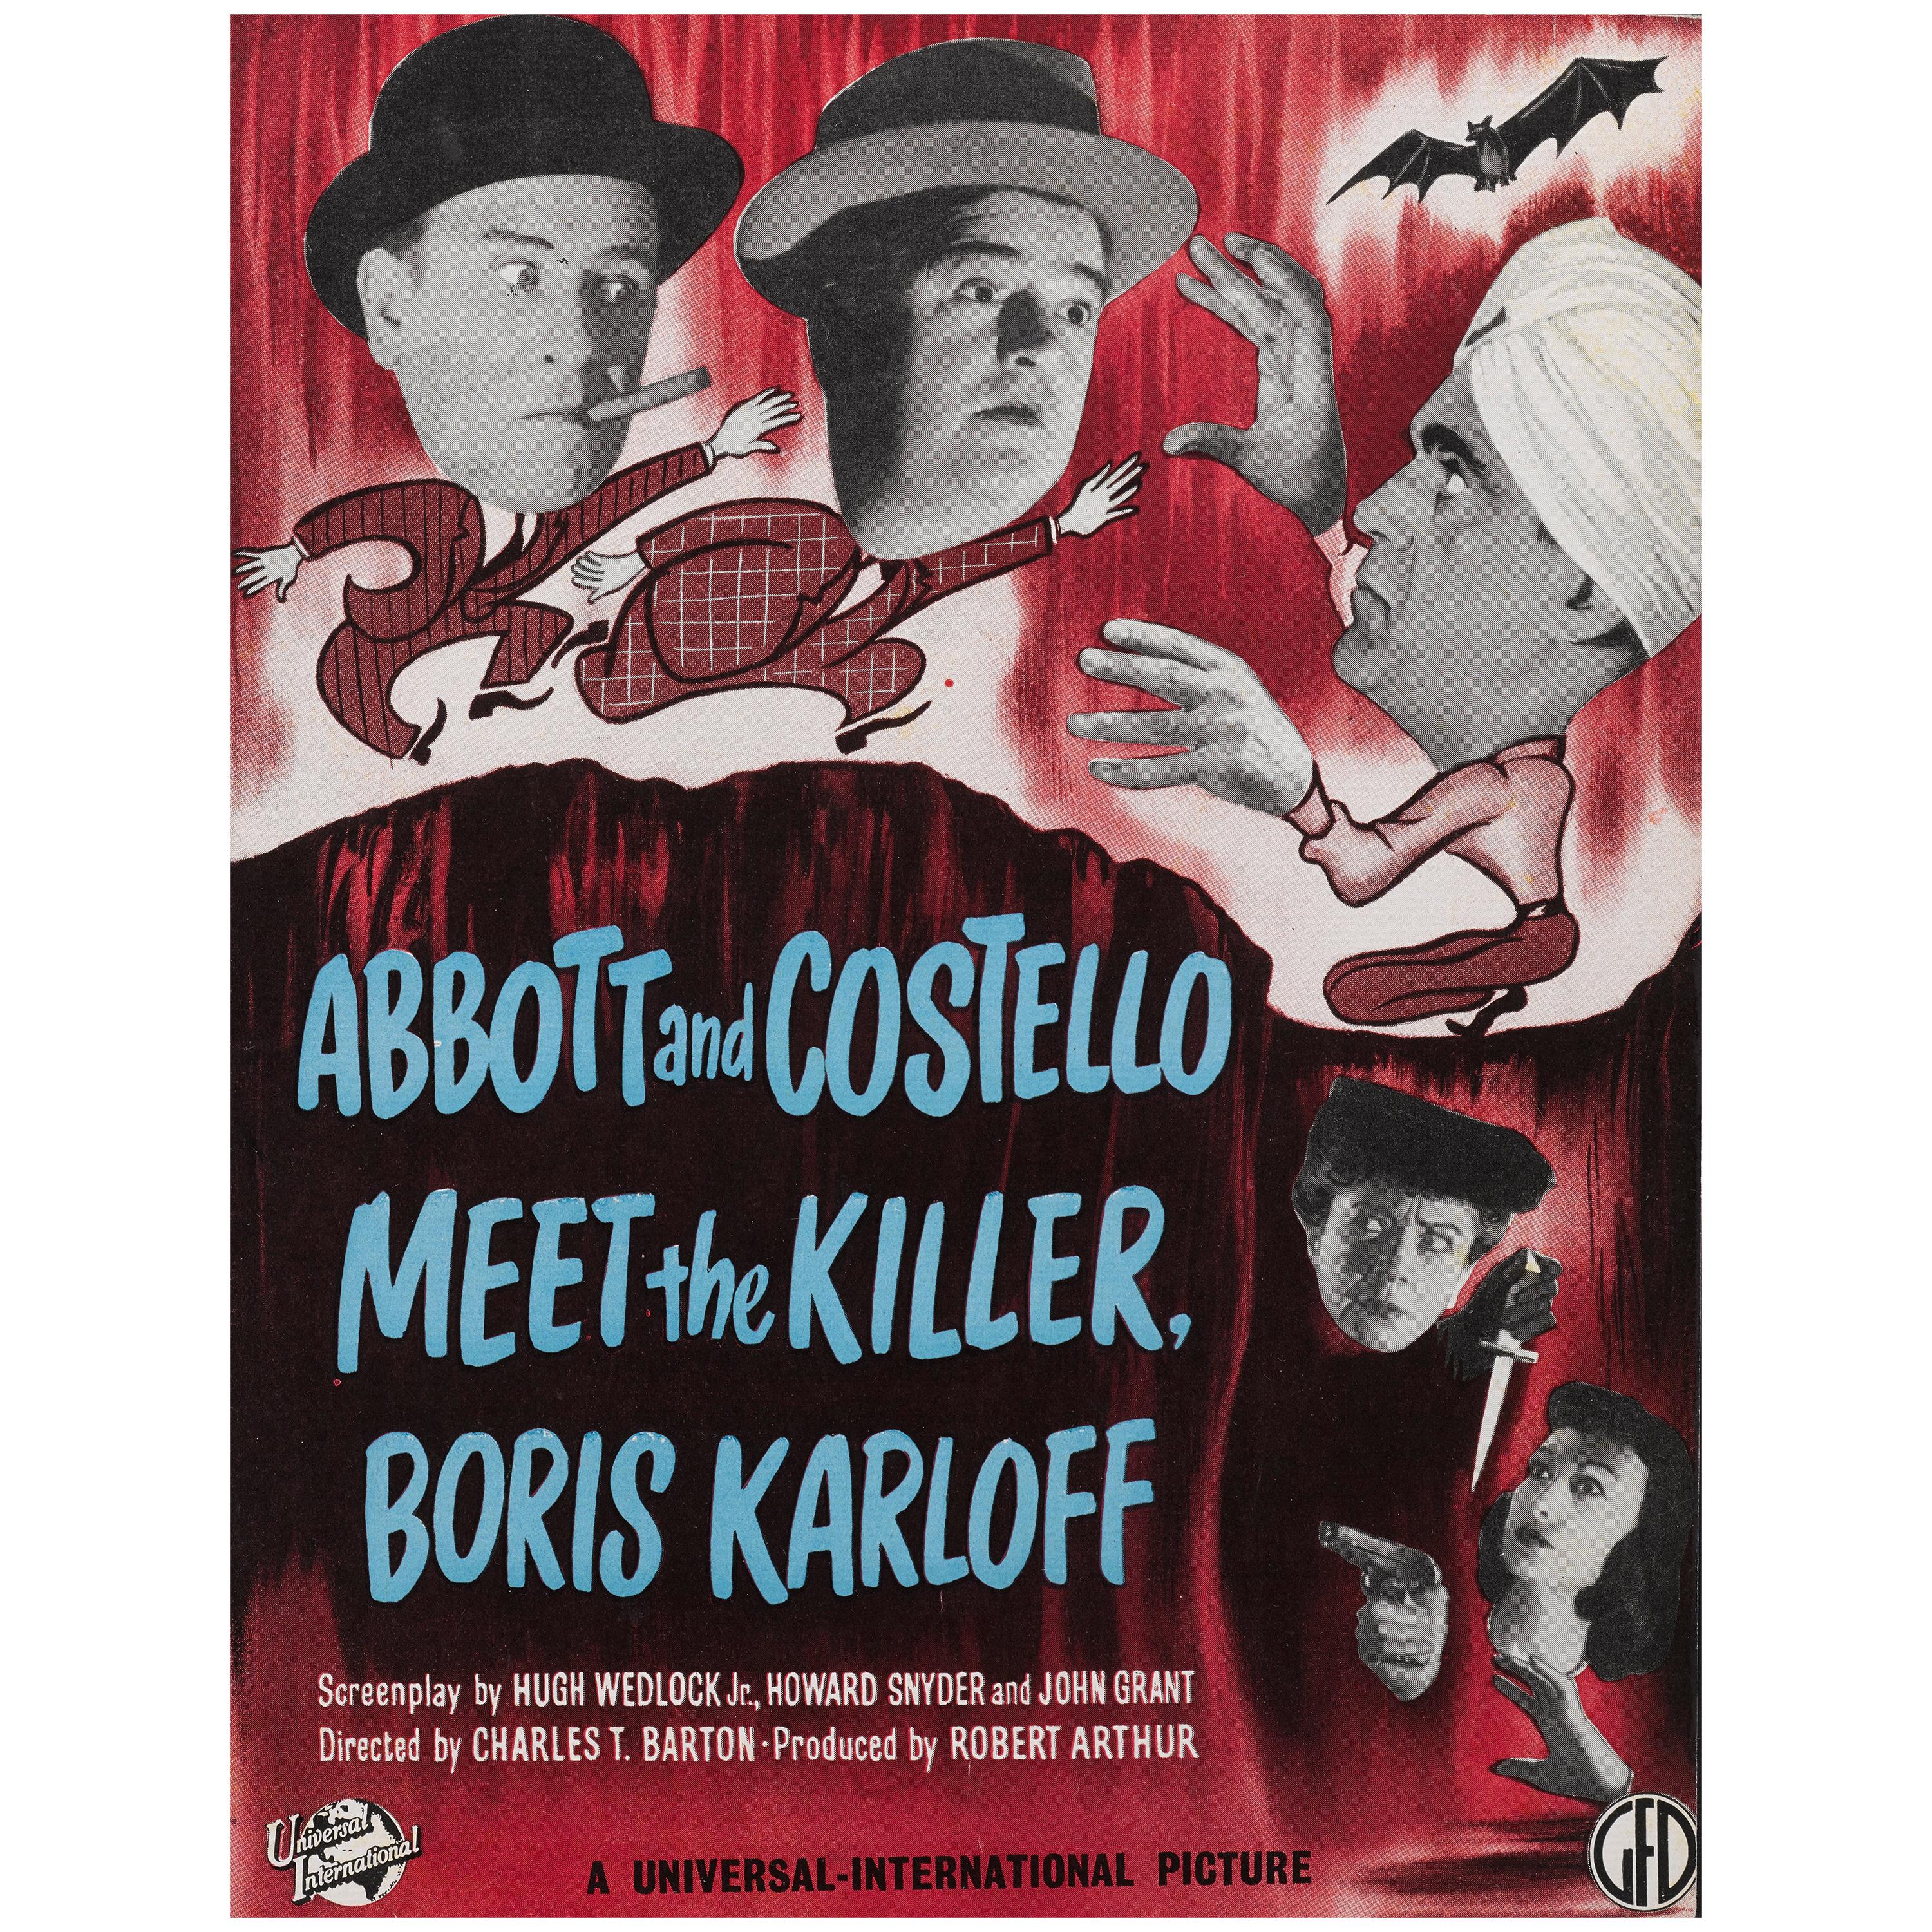 Abbott und Costello Meet the Killer, Boris Karloff